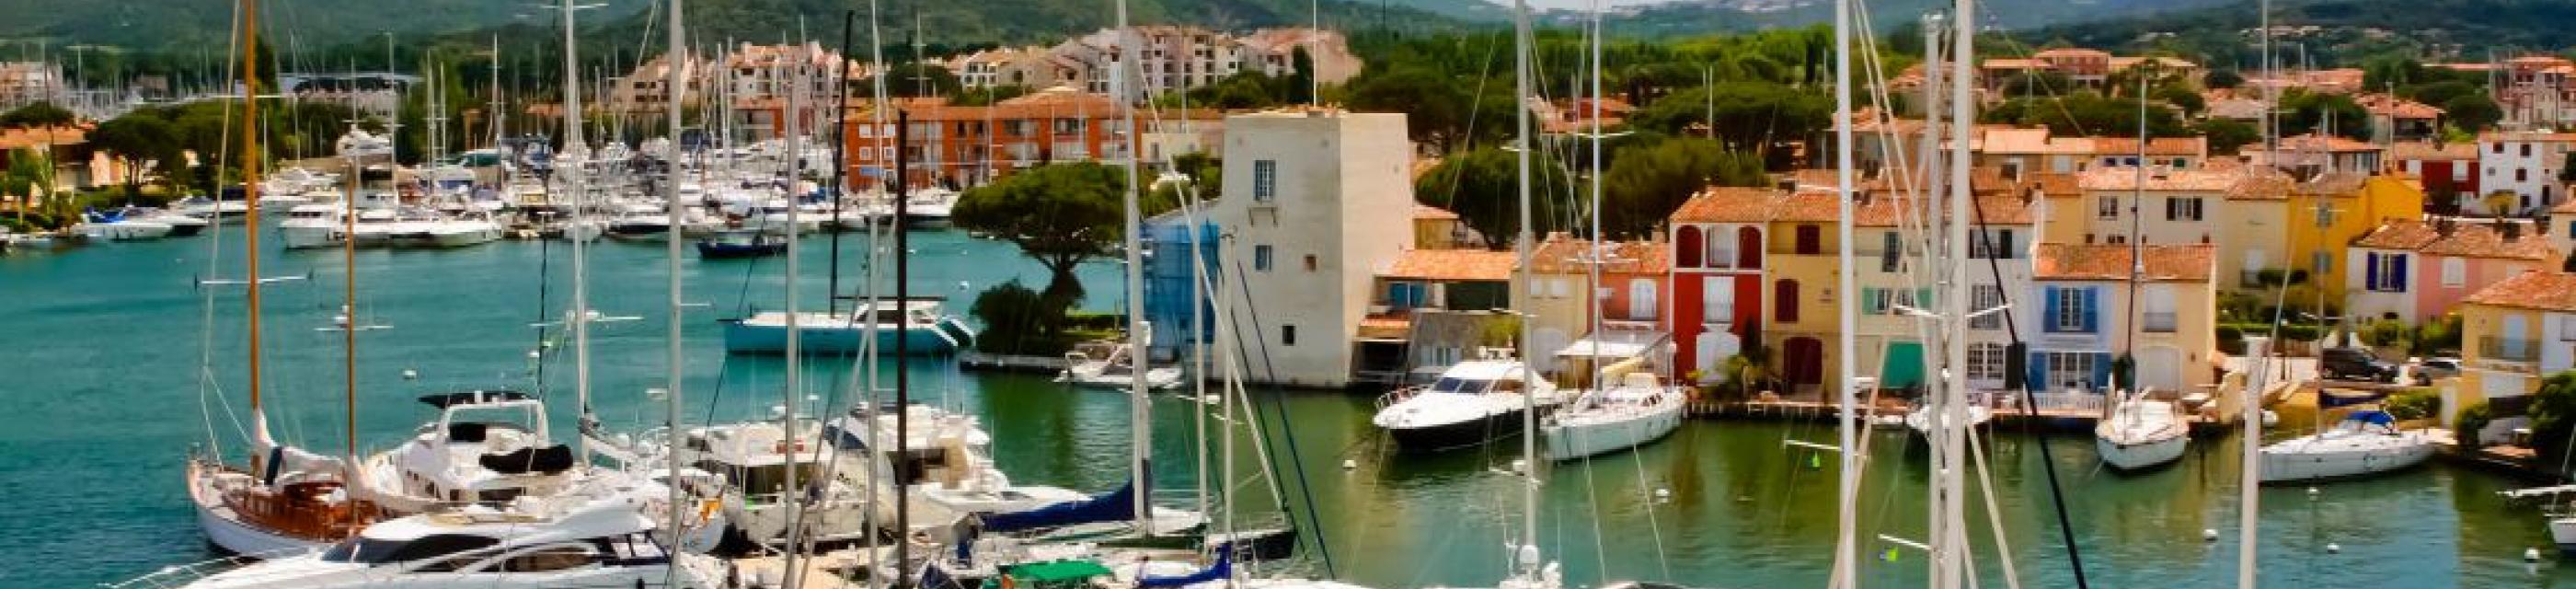 Naviguer à Port Grimaud : ce qu'il faut savoir pour découvrir la cité lacustre en bateau